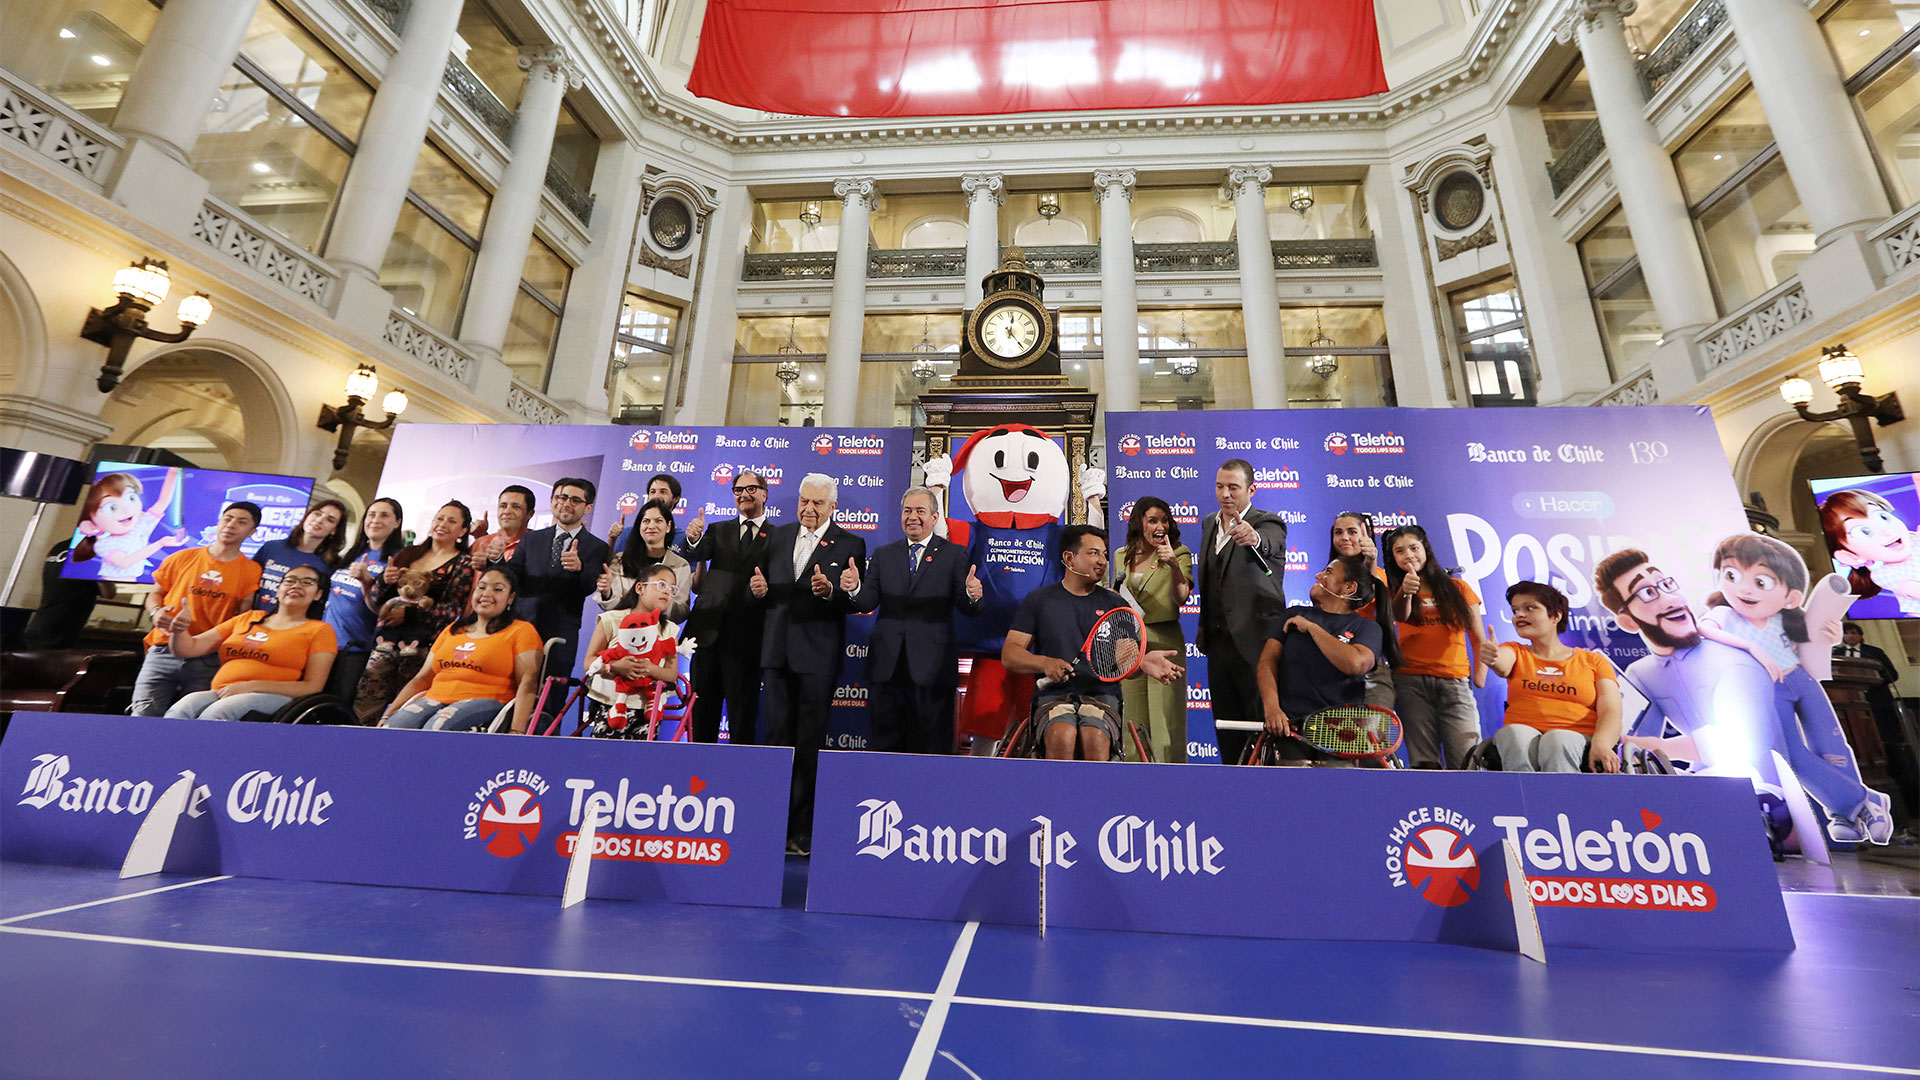 Banco de Chile lanza su campaña de recaudación para Teletón y abre simbólicamente una sucursal en la Luna para recibir los aportes de los amantes del popular videojuego Fortnite